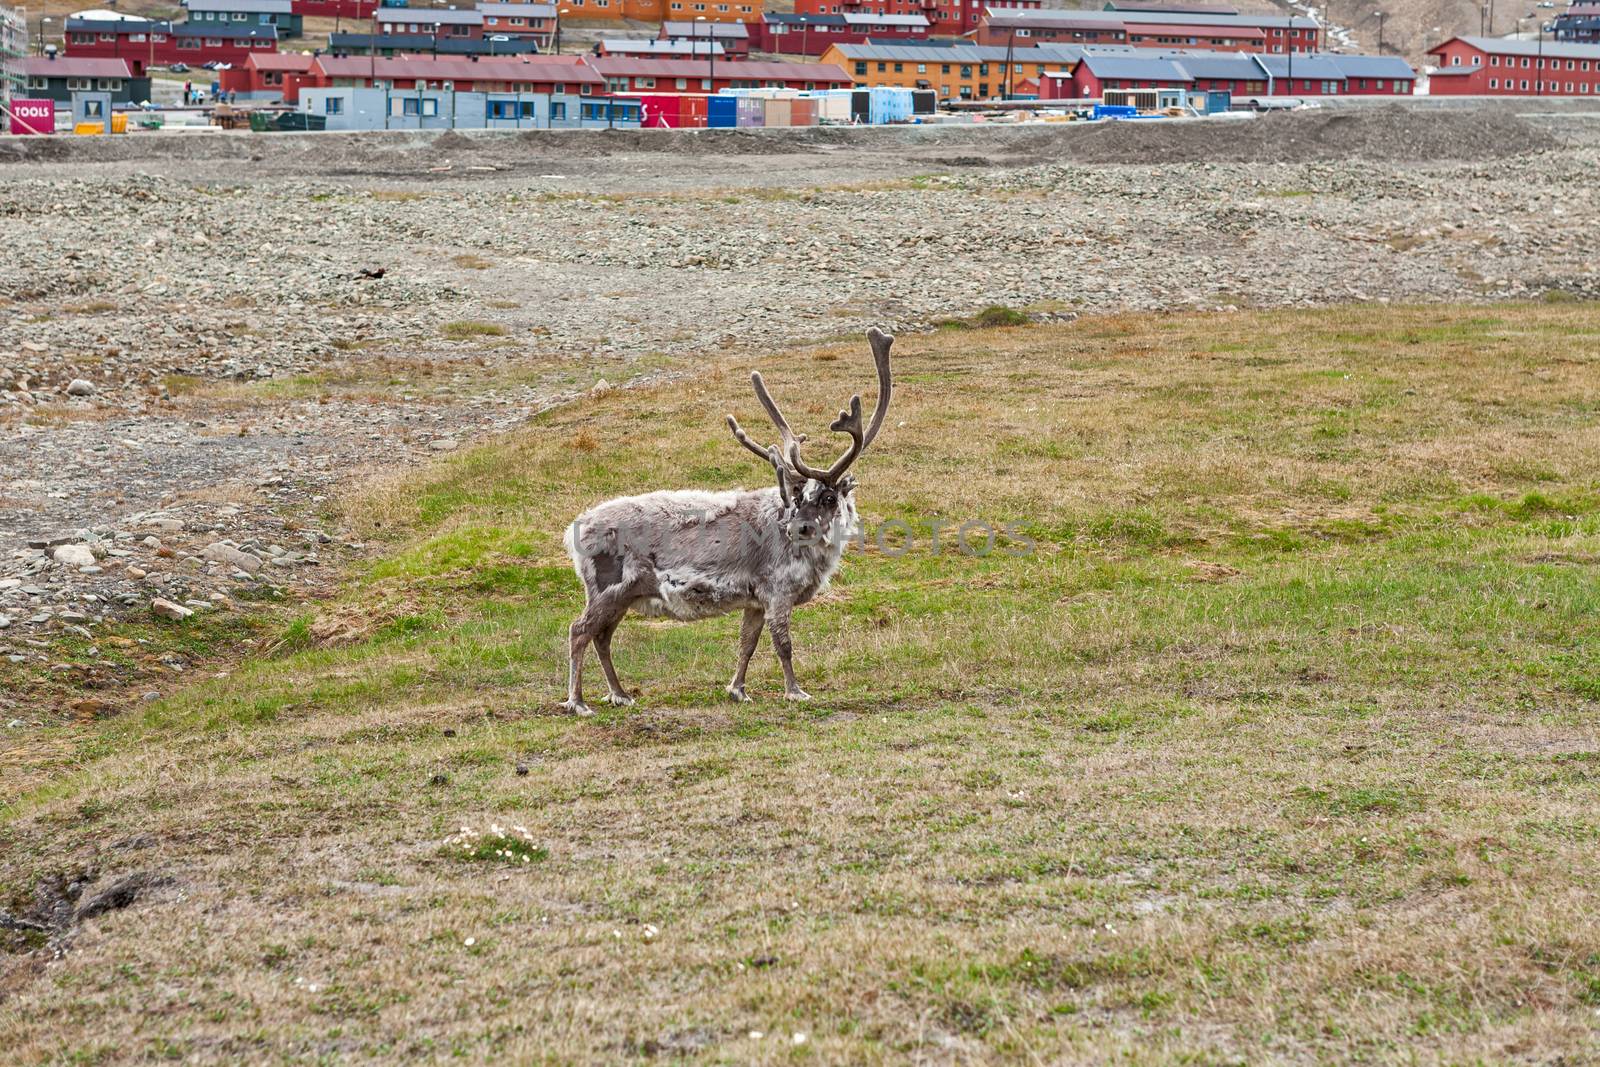 Free reindeer in Longyearbyen in Svalbard islands, Norway